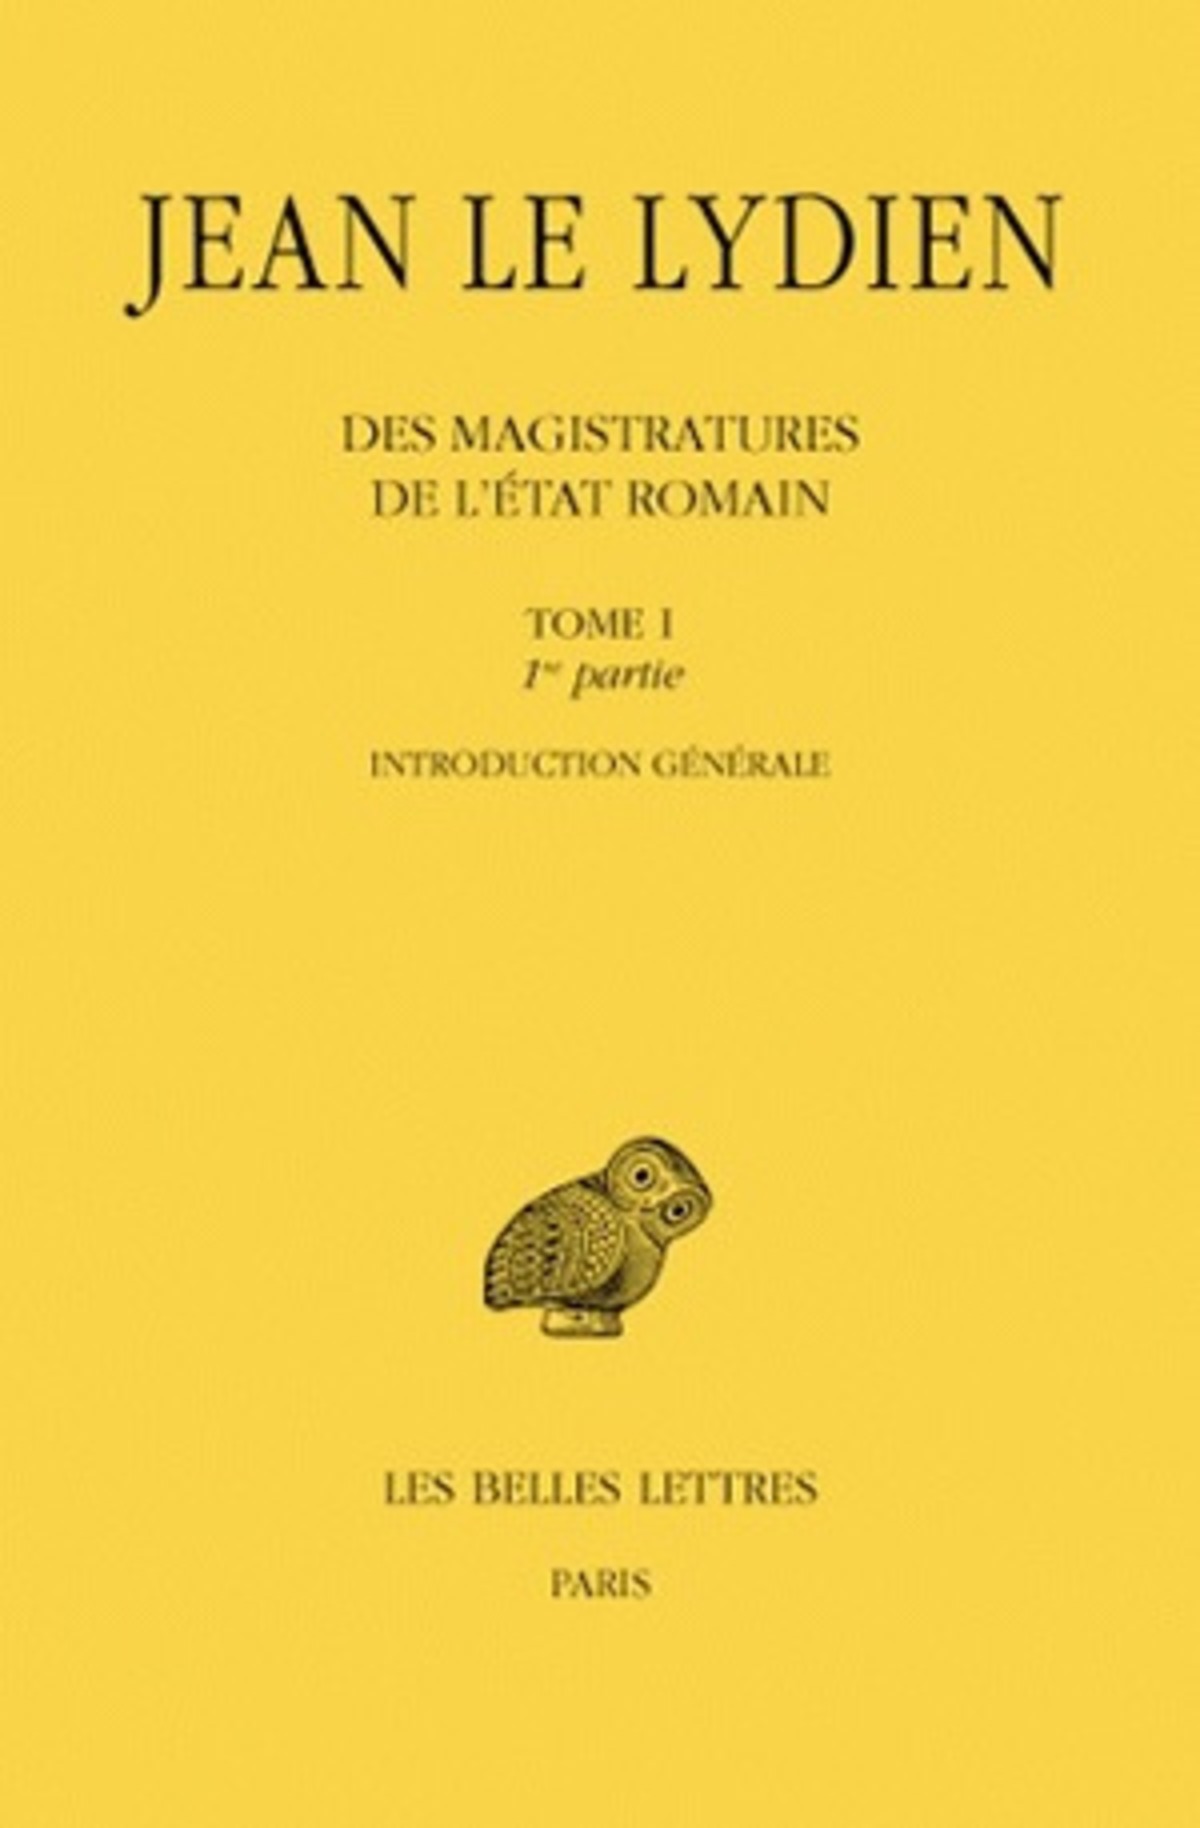 Des Magistratures de l'État romain. Tome I, 1ere partie : Introduction générale. 2e partie, Livre I